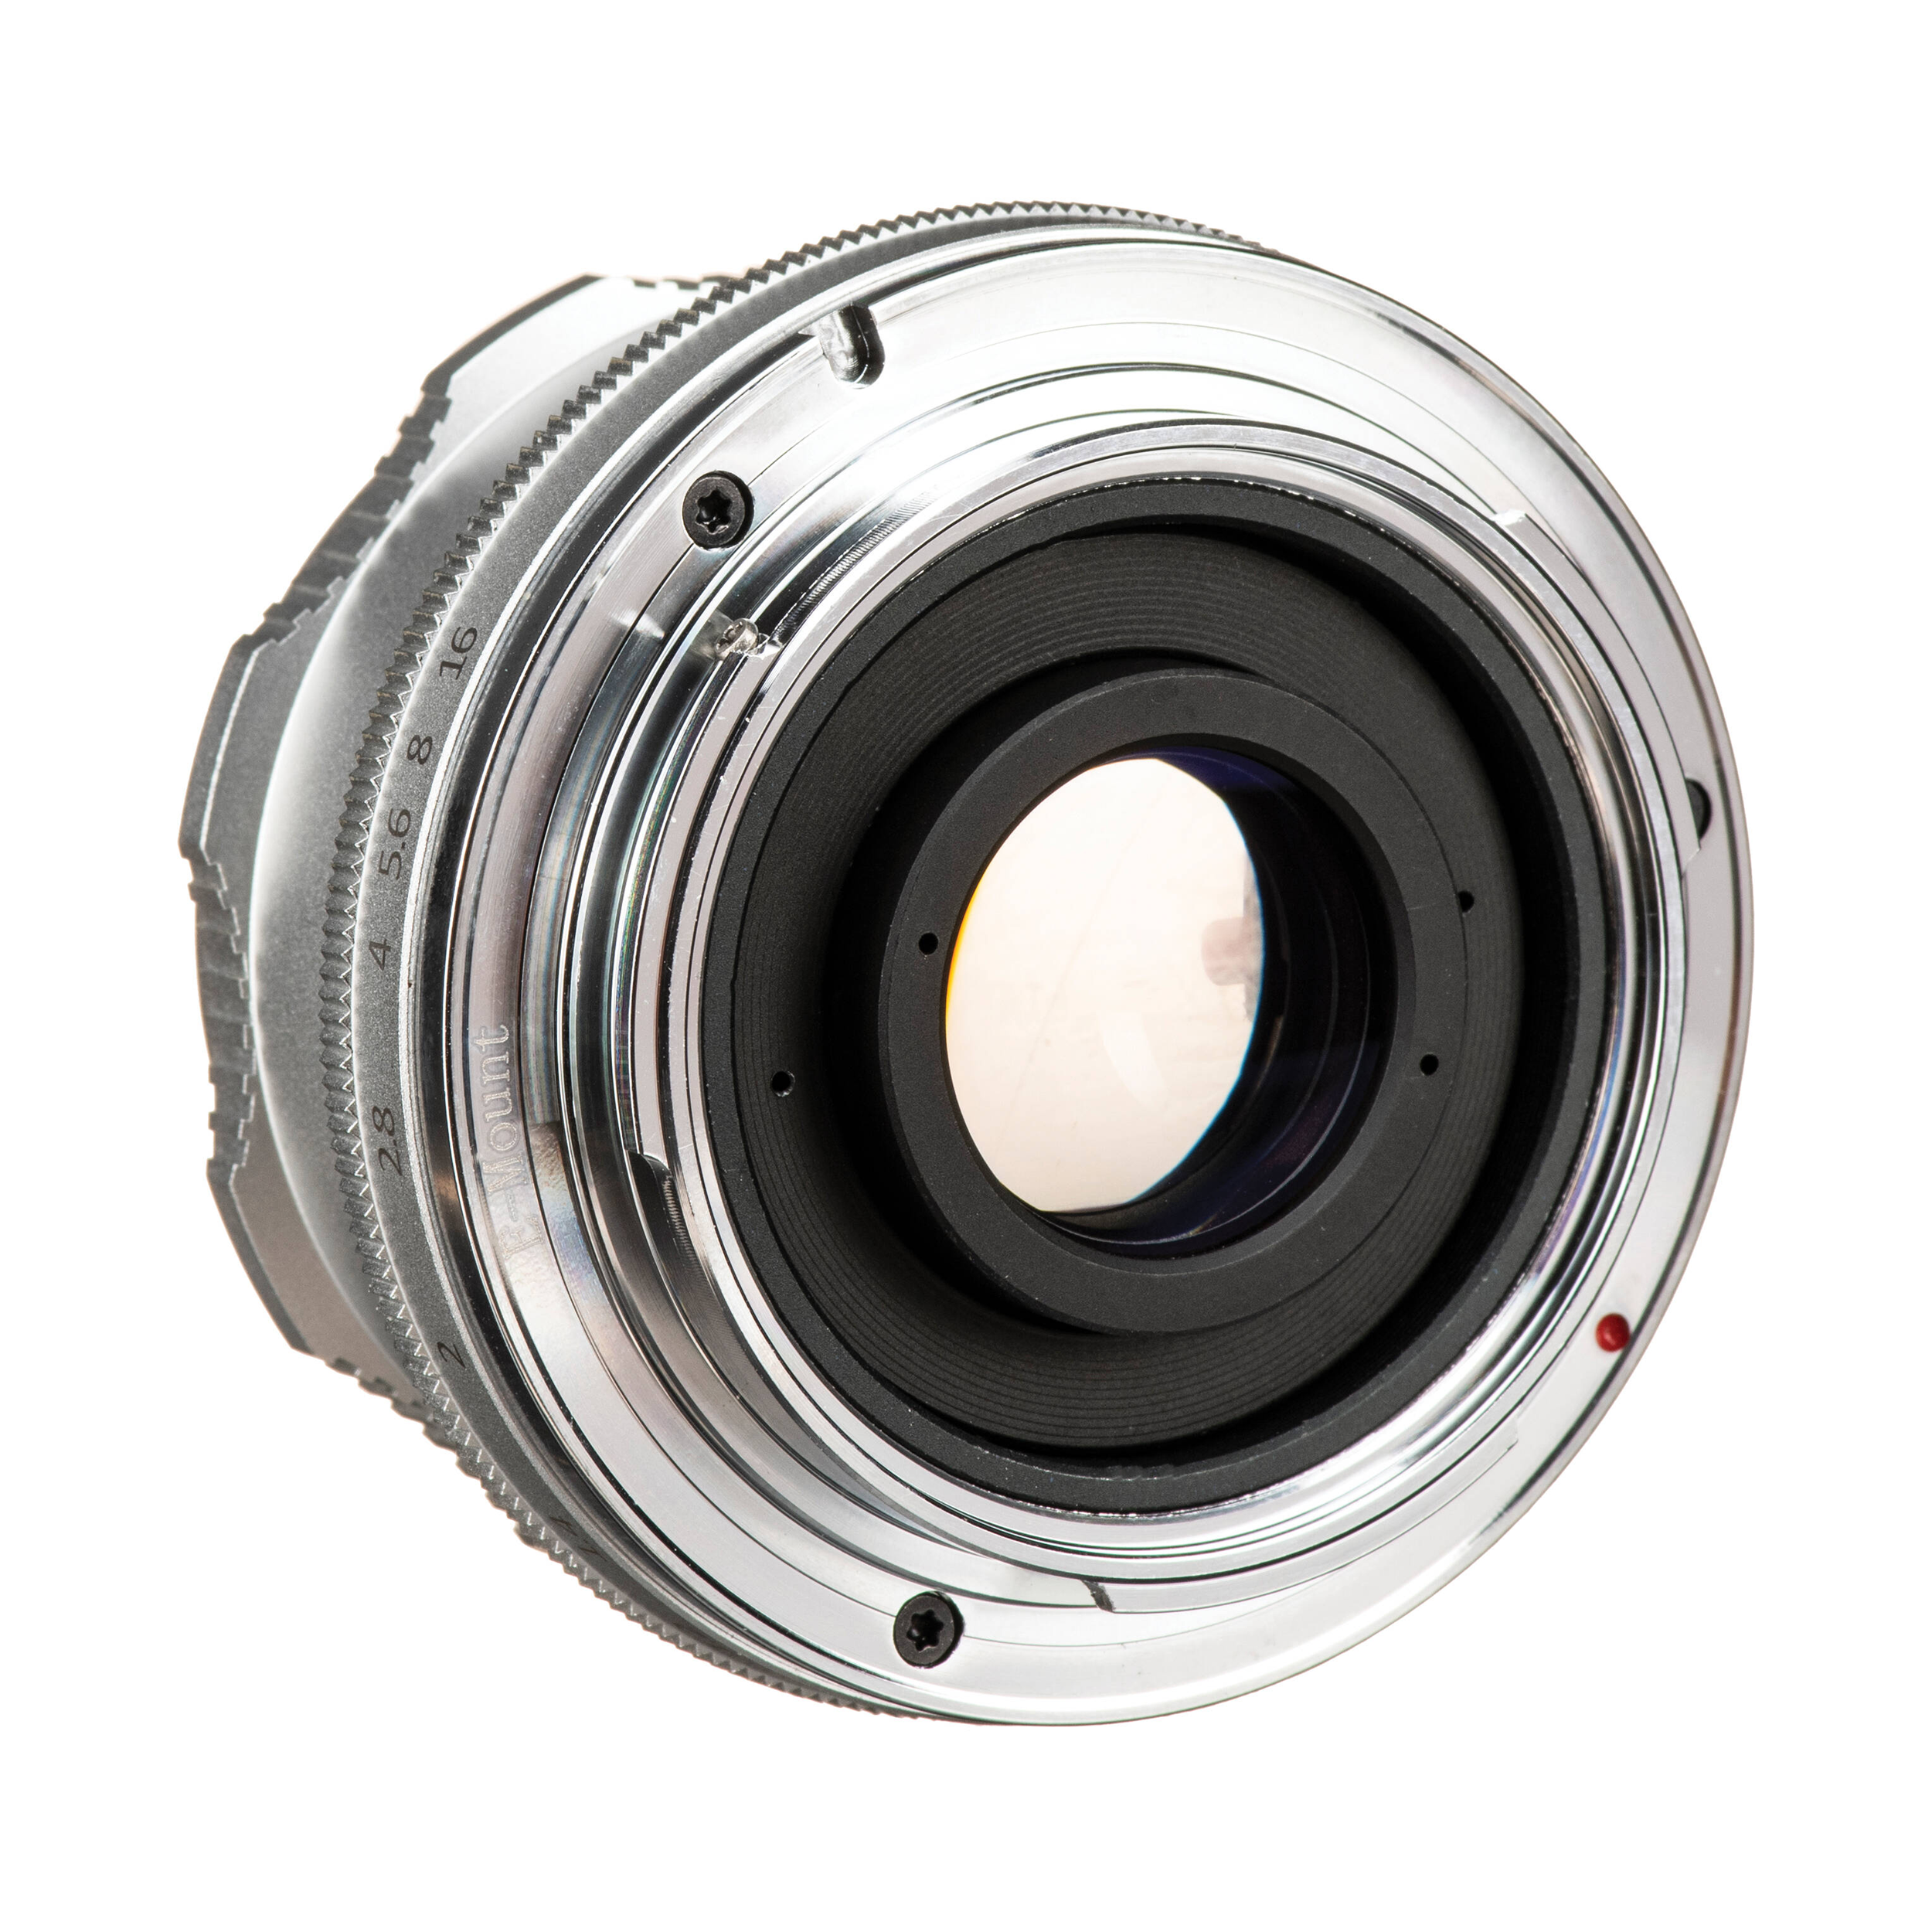 7artisans Photoelectric 35mm f/1.2 Lens for Sony E Mount